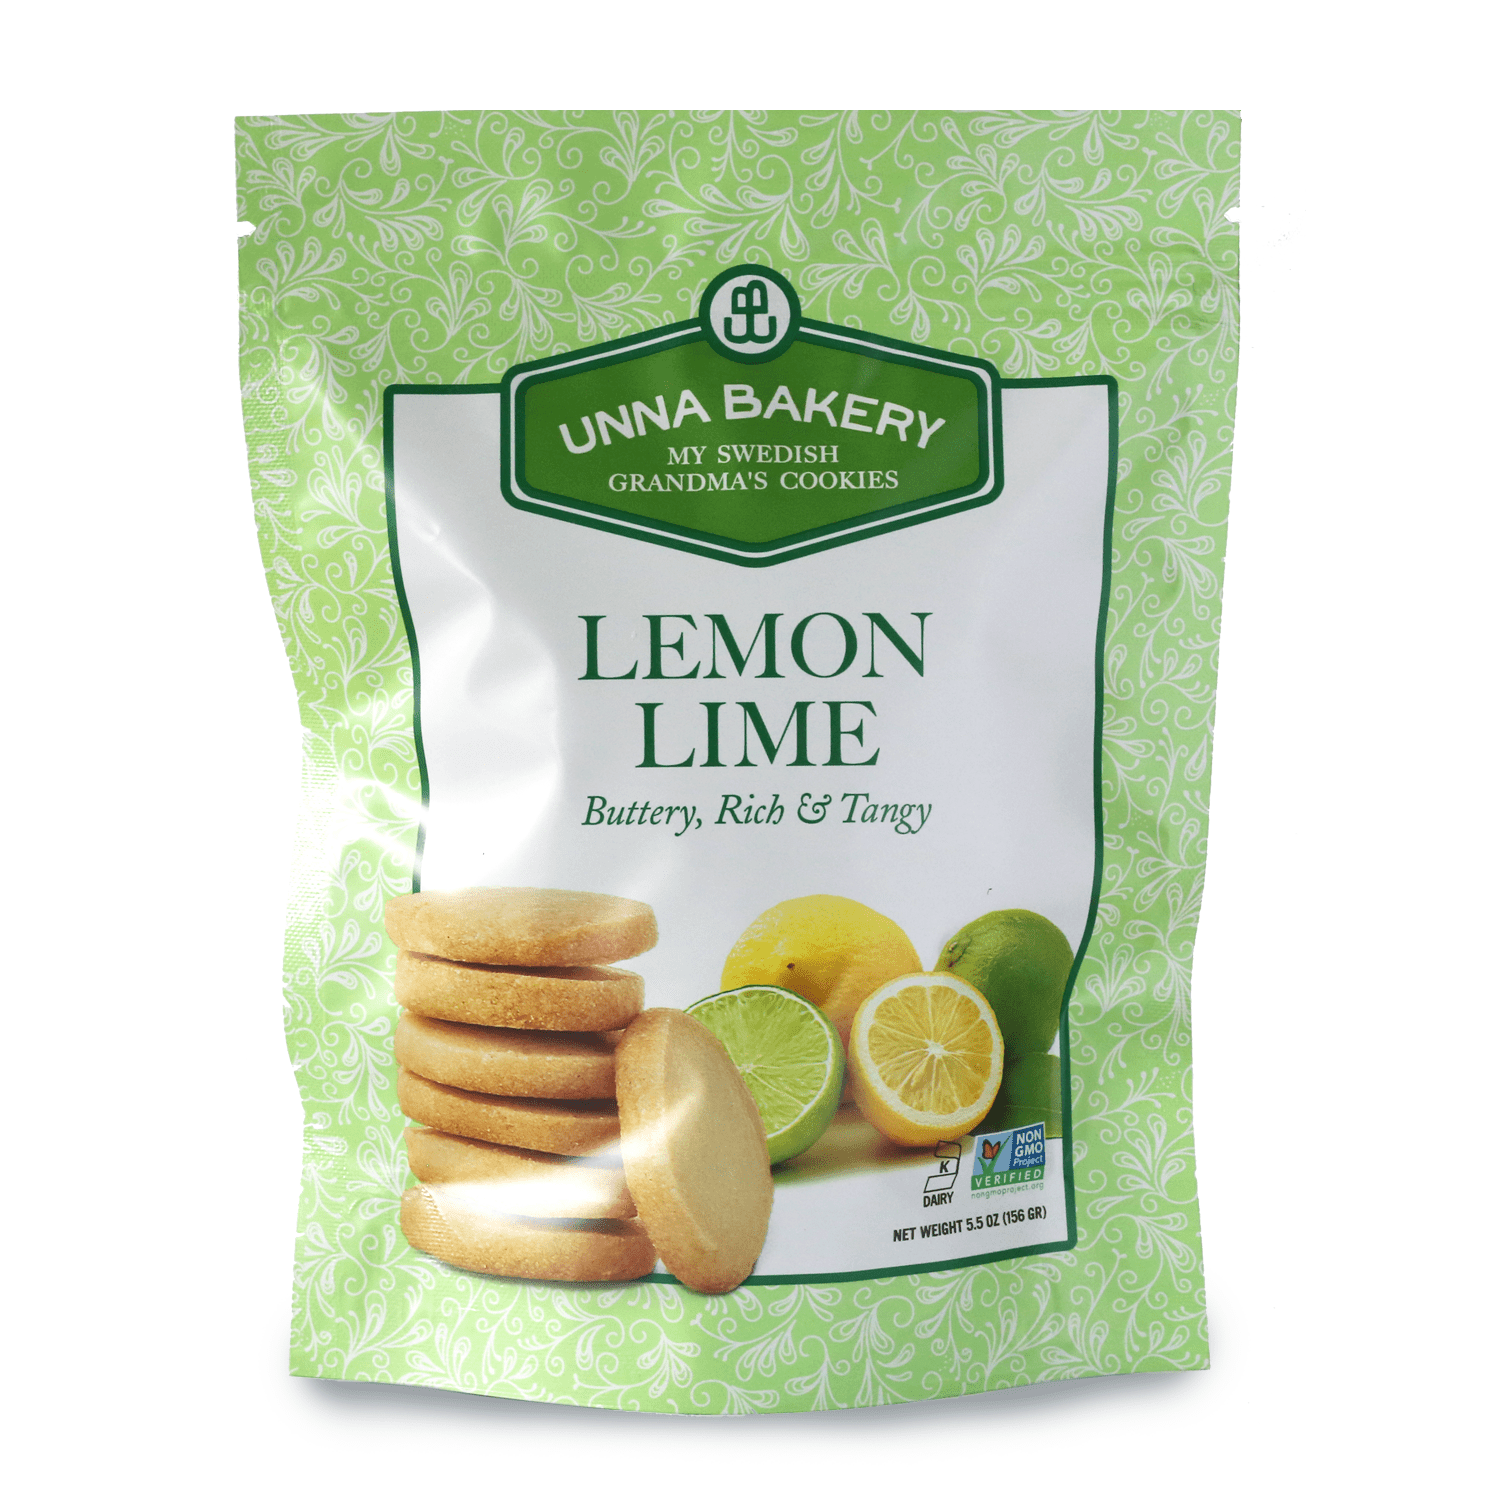 Unna Bakery, Lemon Lime Cookies 6 units per case 5.5 oz